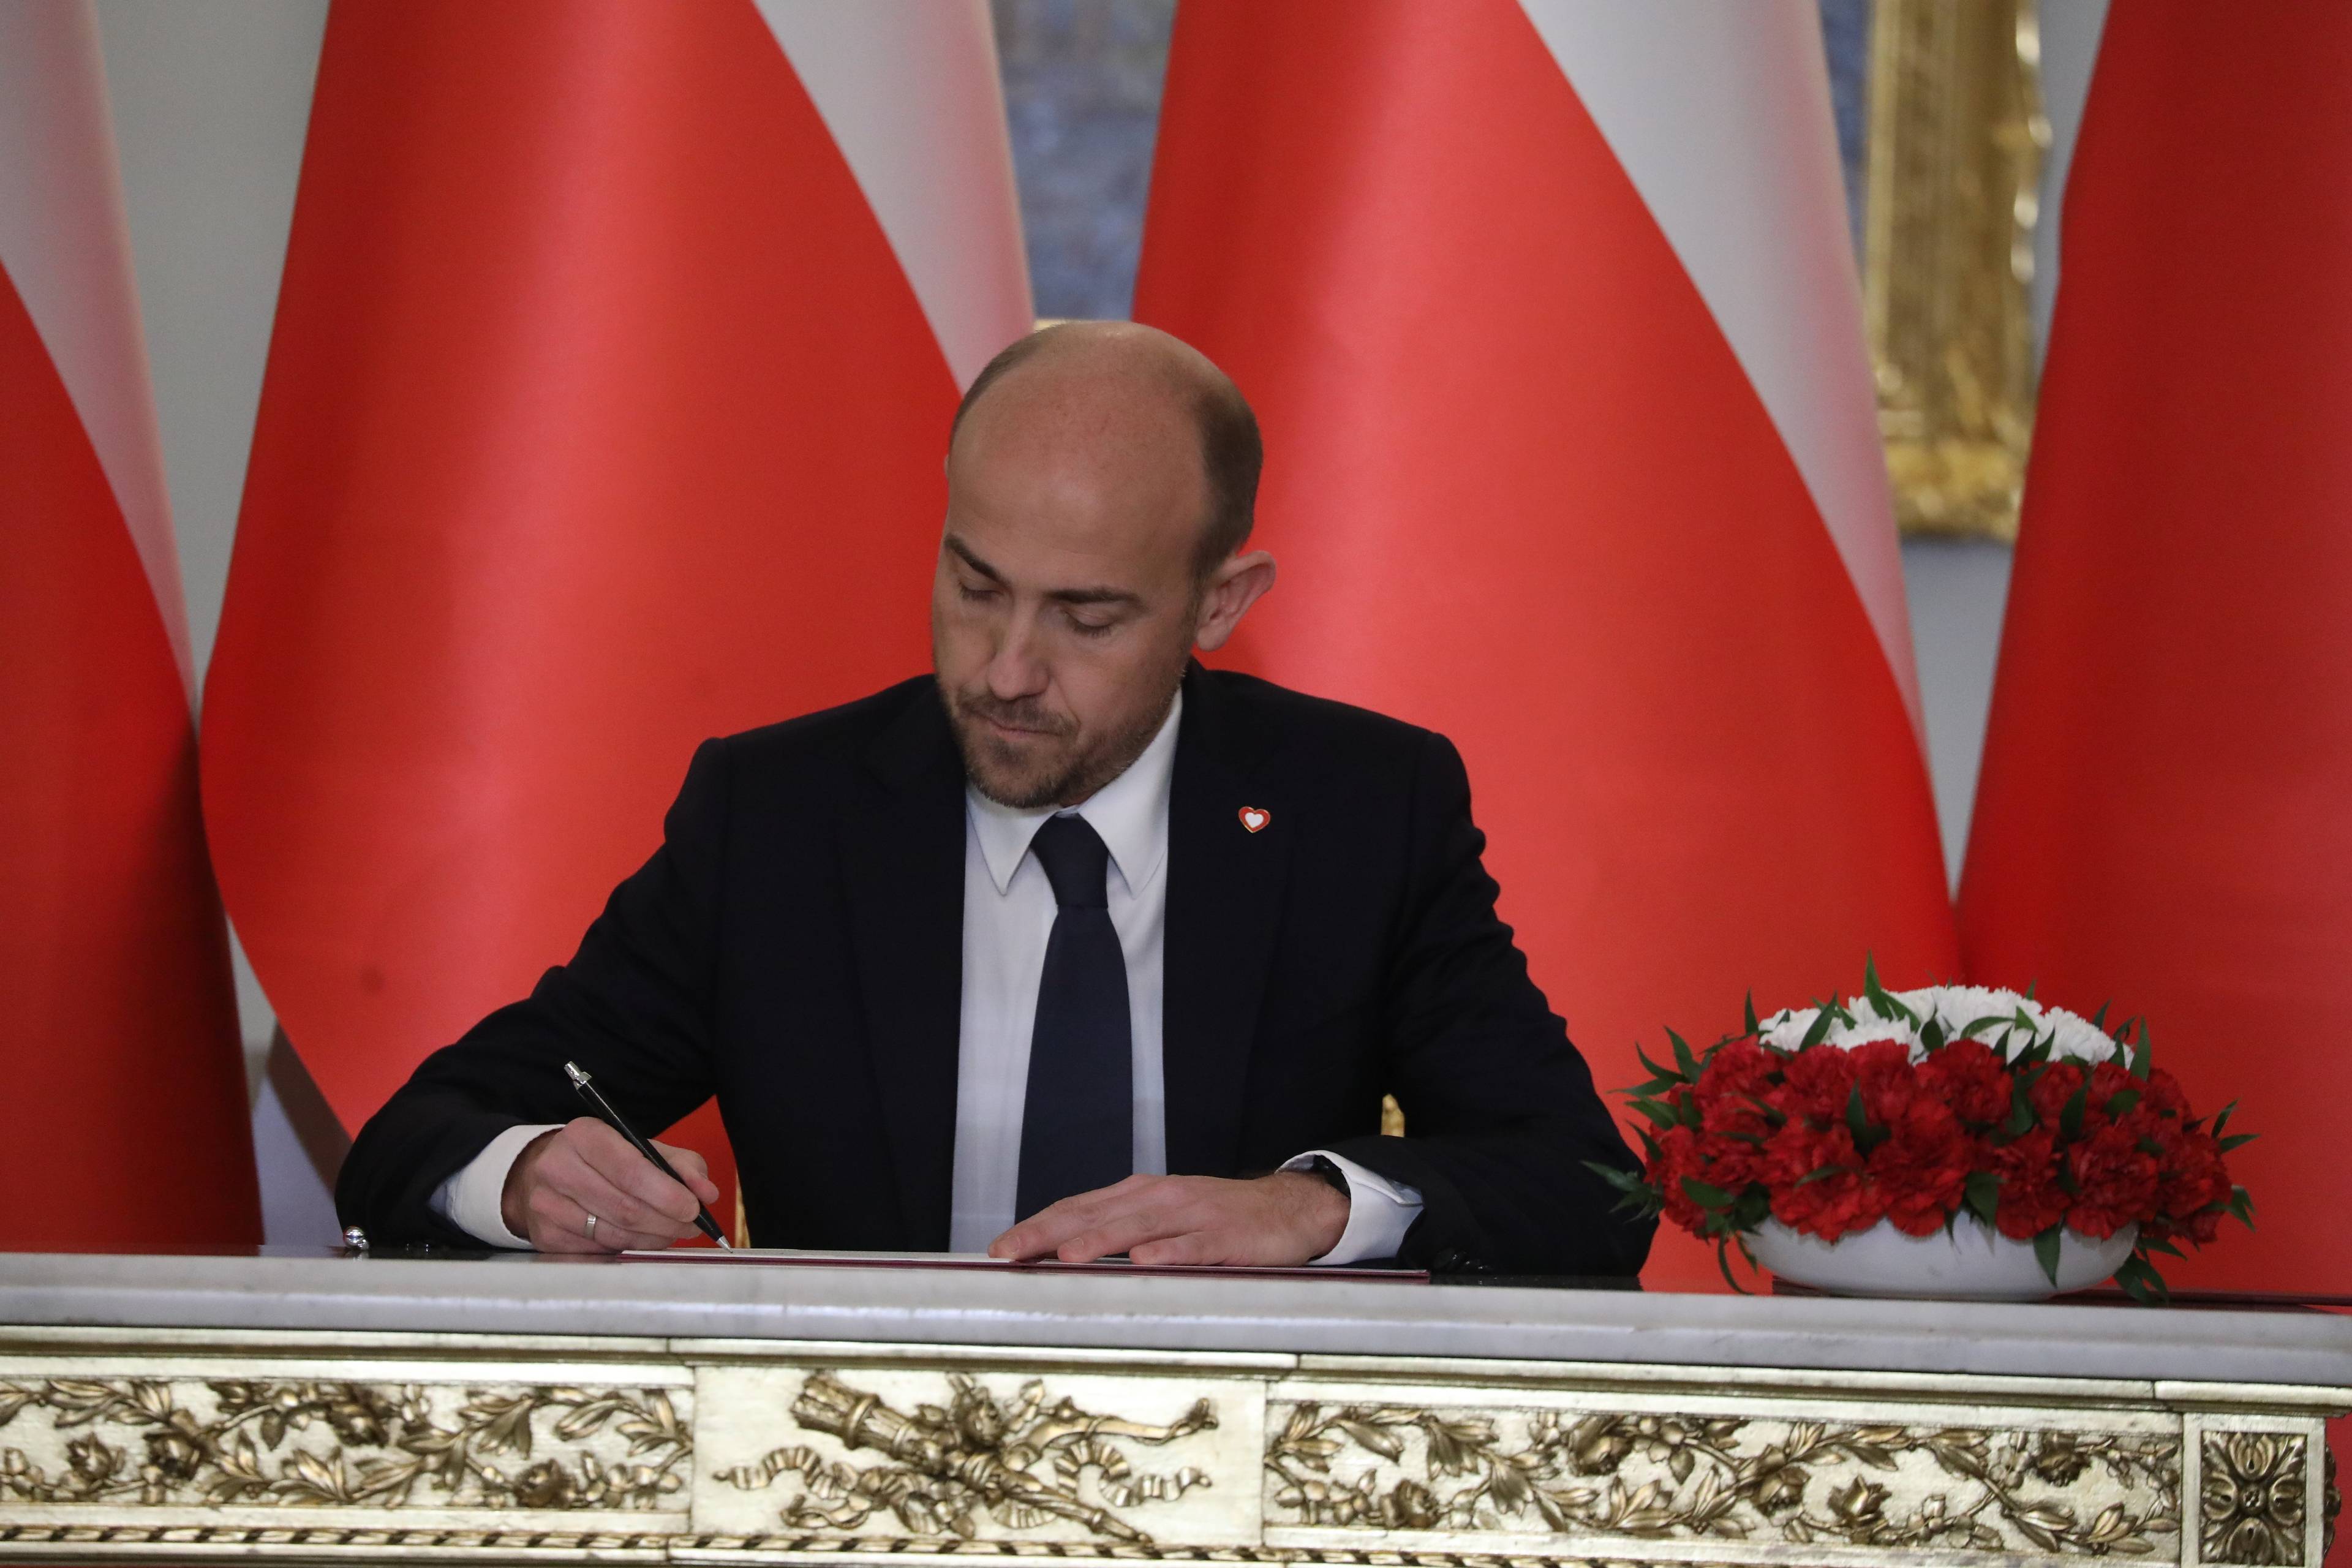 Borys Budka na tle biało-czerwonych flag podpisuje dokument